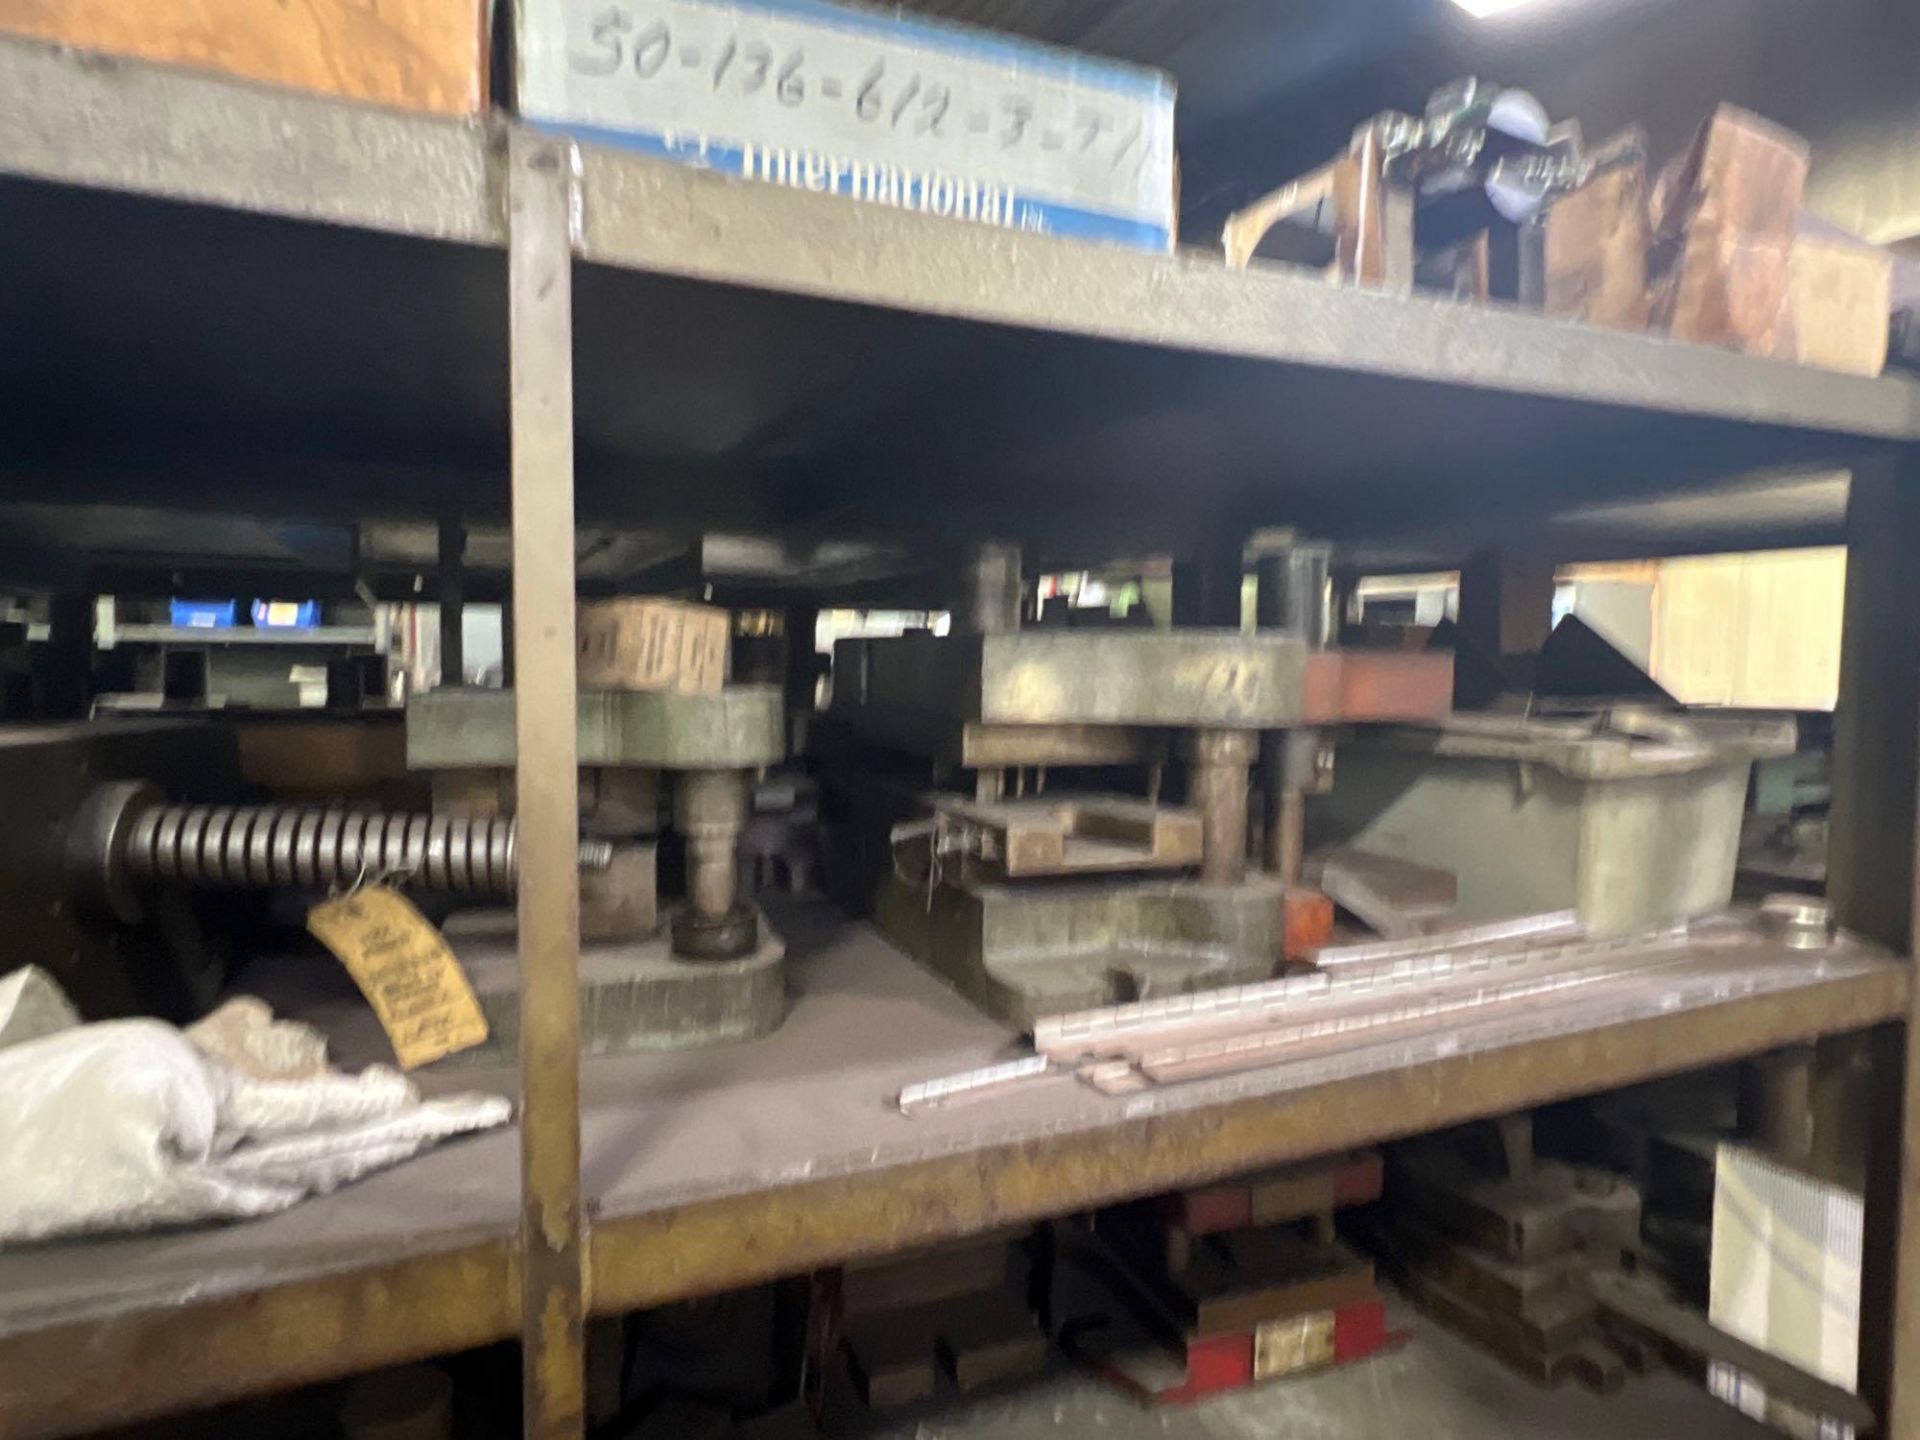 5 Shelf Steel Shelving Unit w/ Used Steel Die Sets - Image 6 of 12